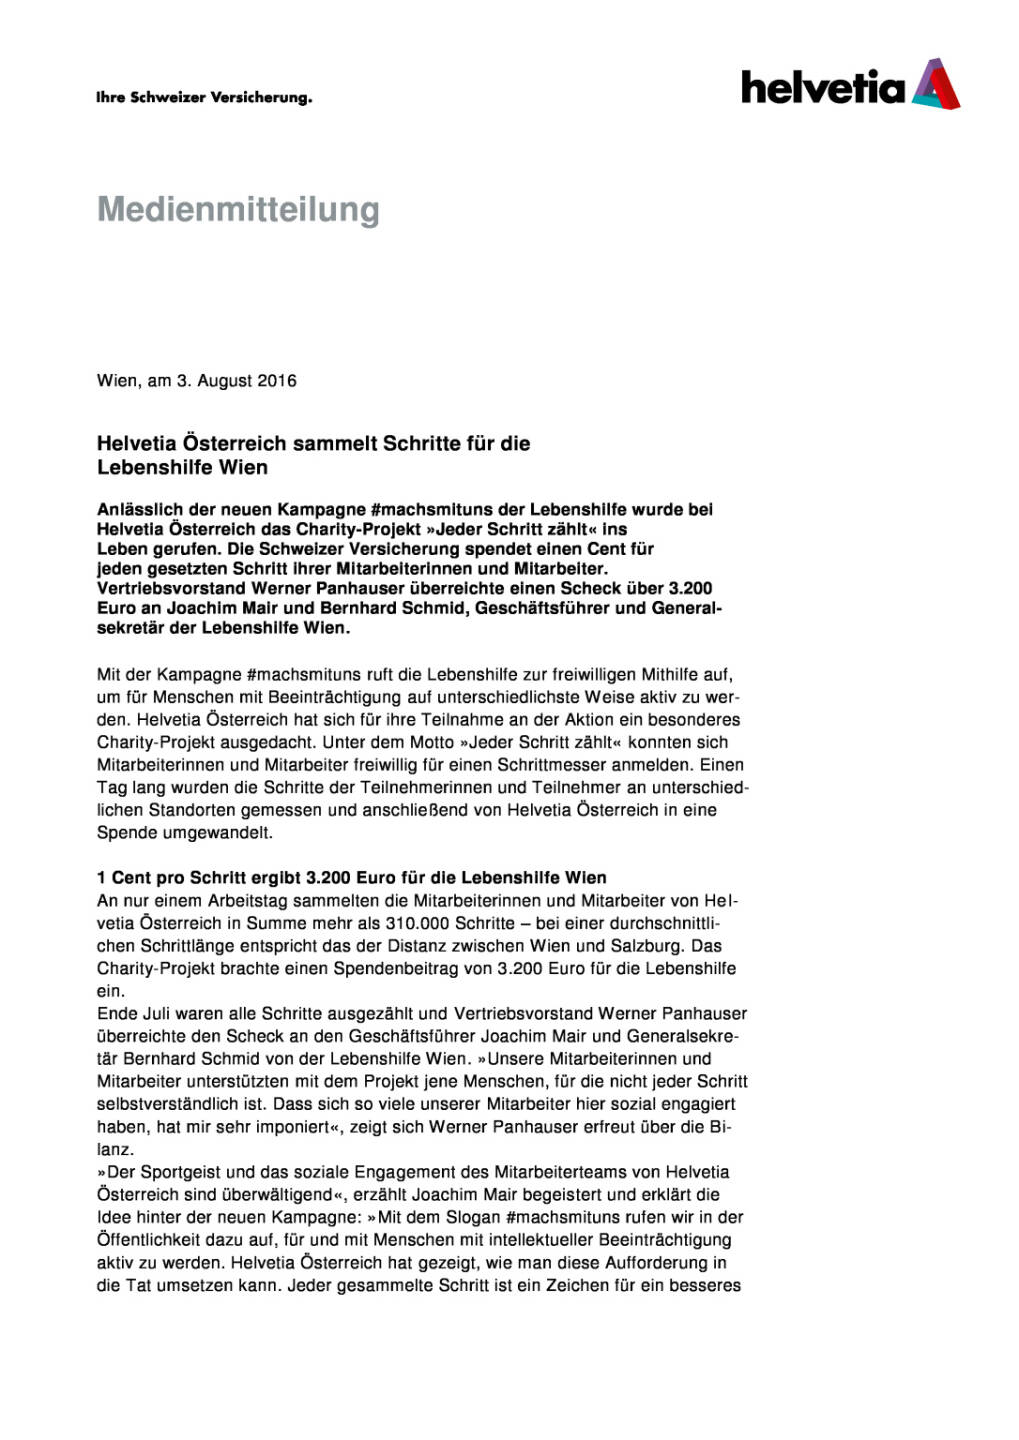 Helvetia Österreich sammelt Schritte für die Lebenshilfe Wien, Seite 1/3, komplettes Dokument unter http://boerse-social.com/static/uploads/file_1562_helvetia_osterreich_sammelt_schritte_fur_die_lebenshilfe_wien.pdf